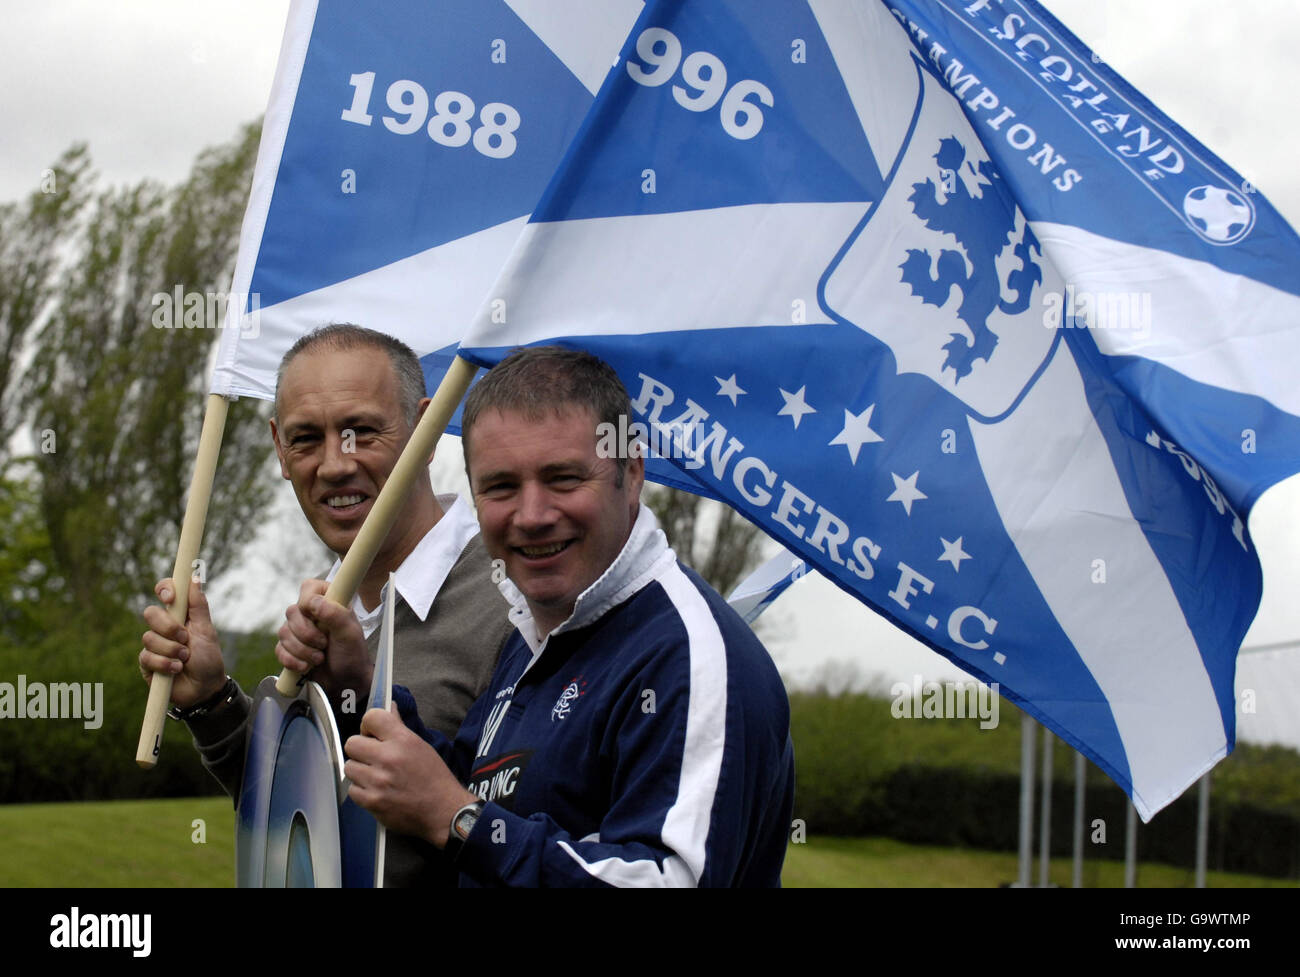 Die ehemaligen Rangers-Spieler Mark Hateley (links) und Ally McCoist fördern „9 in a Row“, den 10. Jahrestag ihrer 9. Liga-Meisterschaft in Folge des Rangers FC, im Murray Park, Glasgow. Stockfoto